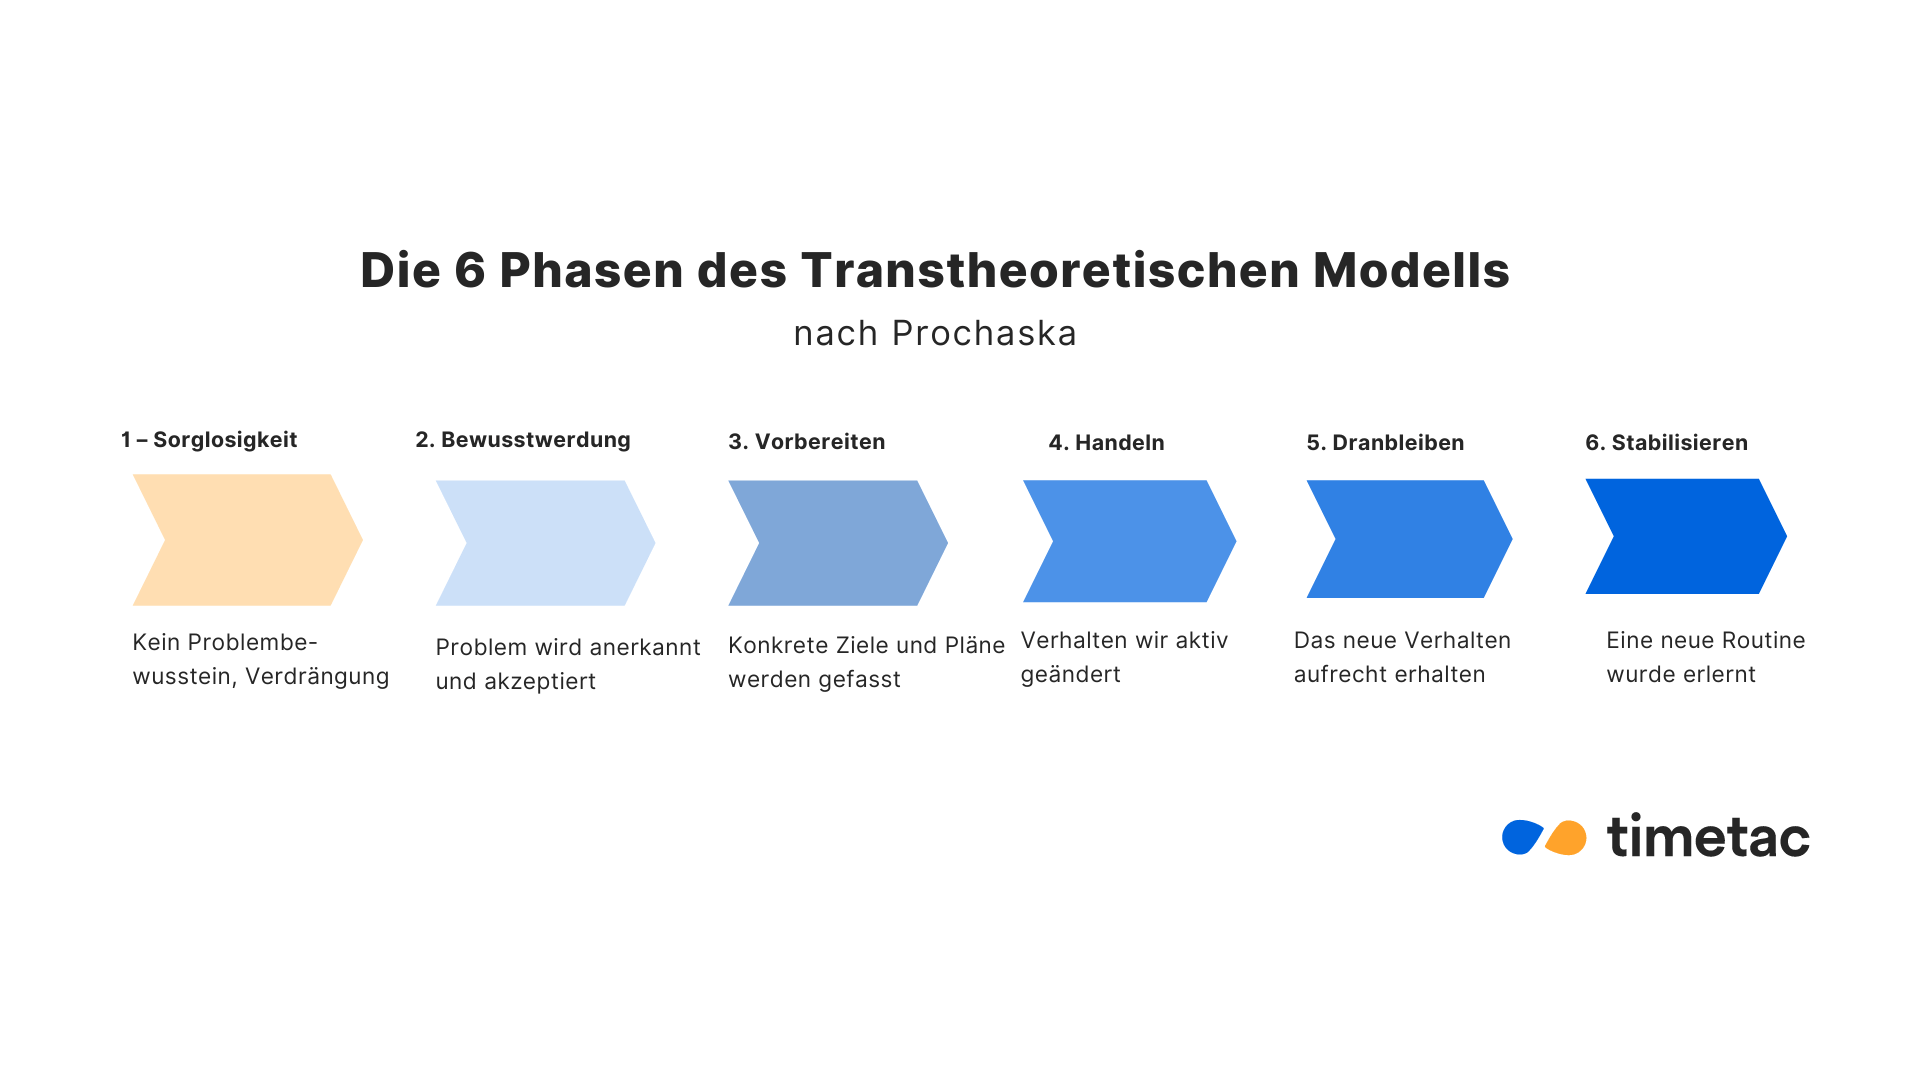 Die 6 Phasen des Transtheoretischen Modells